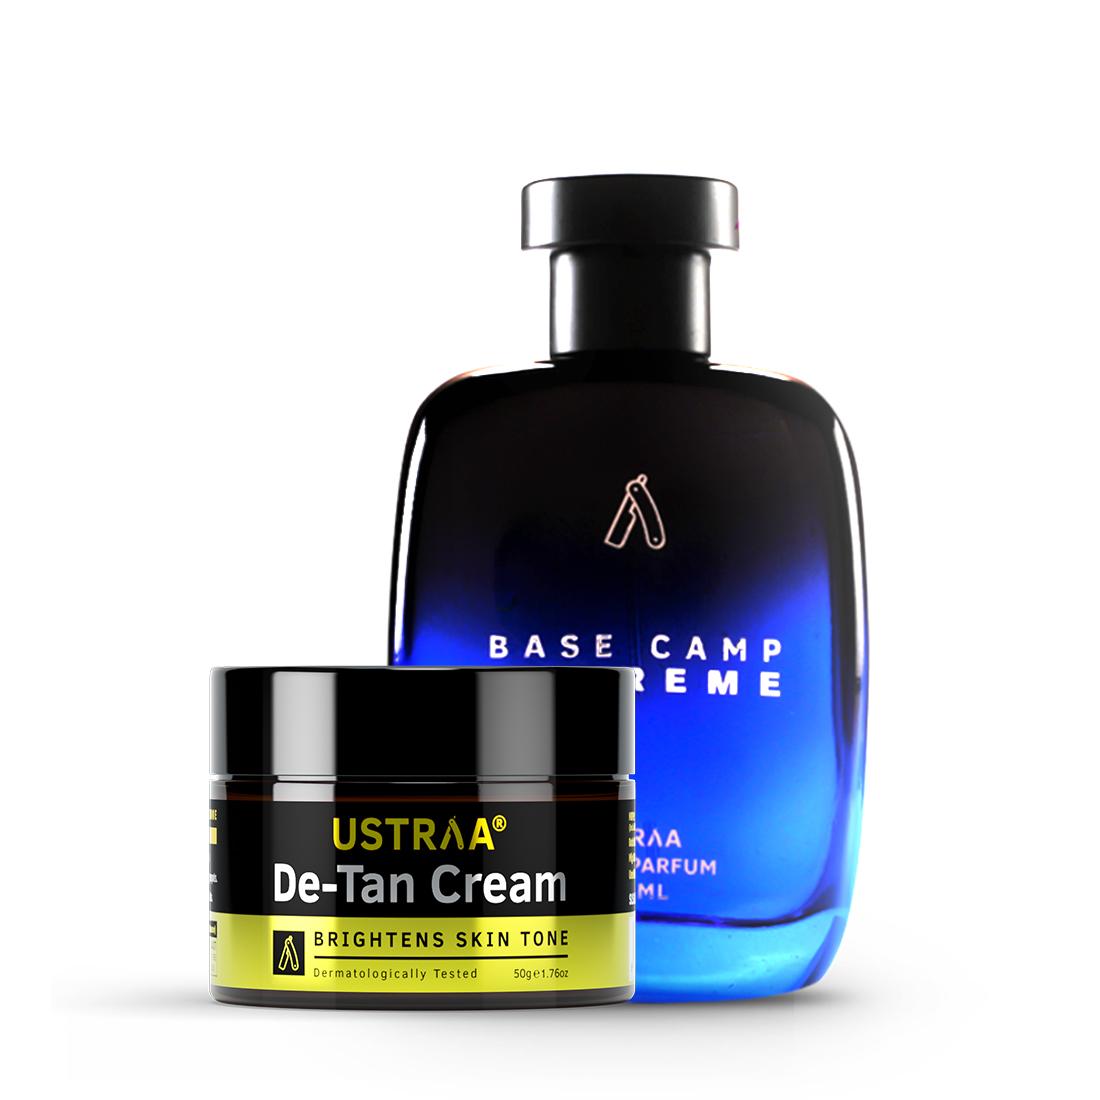  Base Camp Extreme EDP - Perfume for Men & De-Tan Face Cream